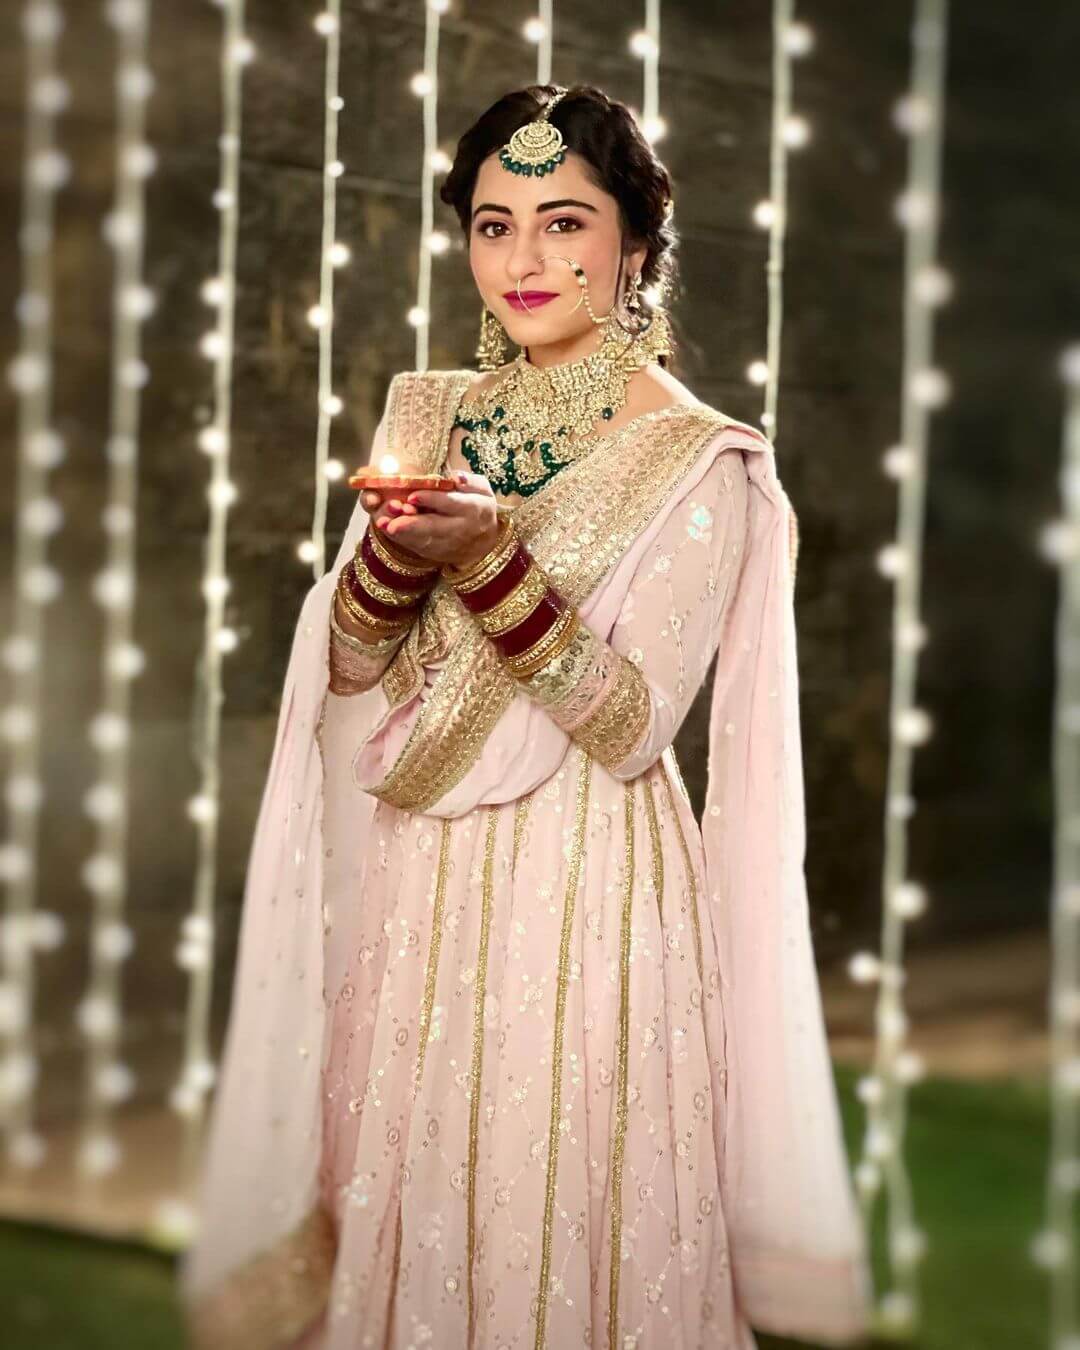 Desi Kudi Niyati Fatnani Diwali Look In Pink Anarkali Suit With Heavy Jewellery